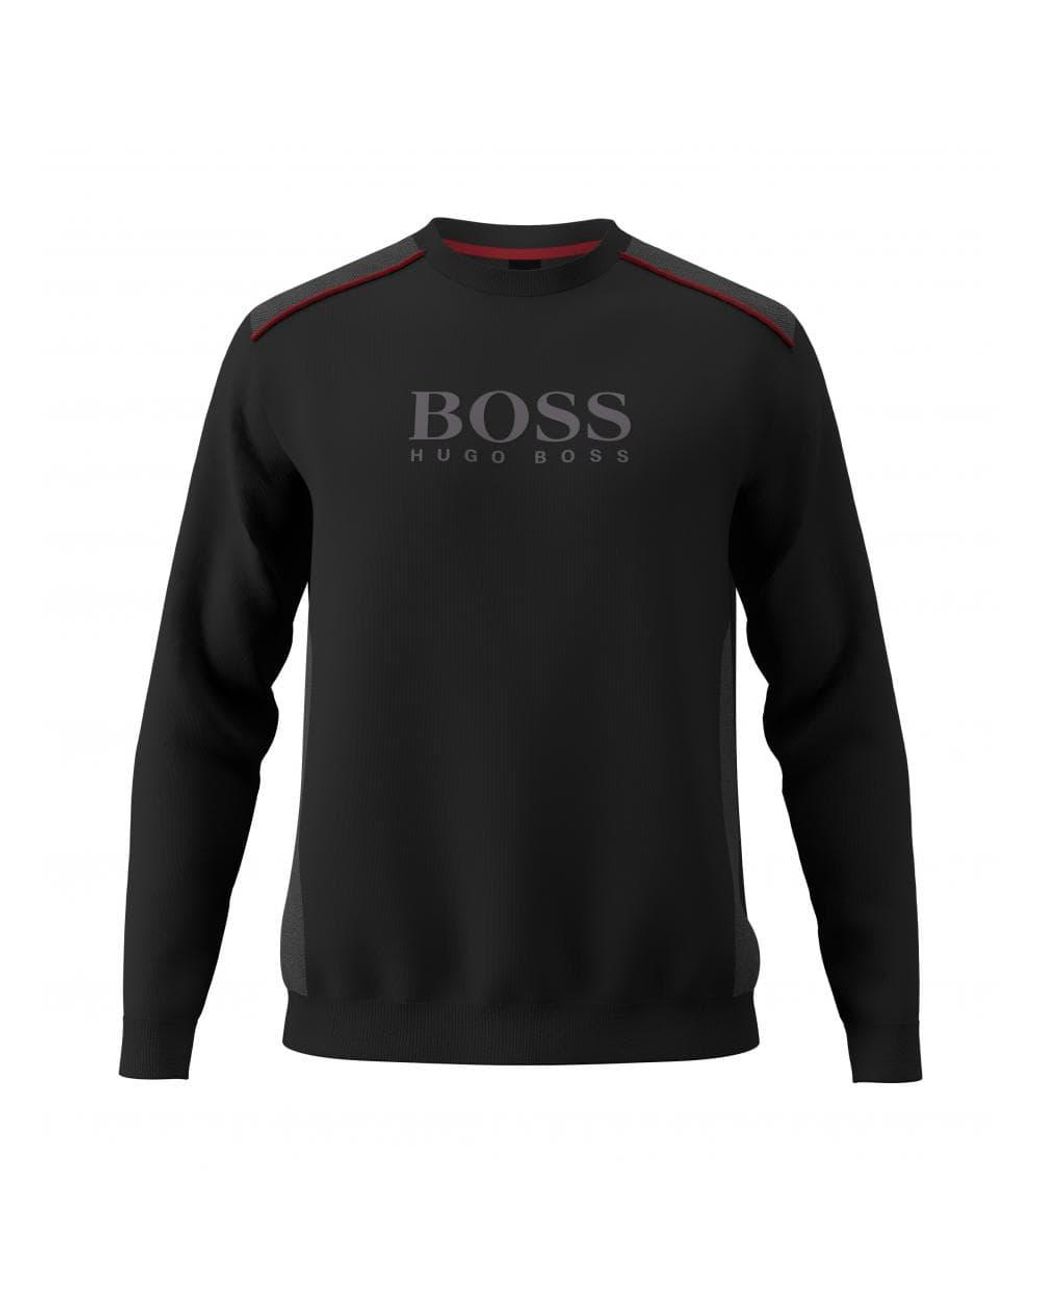 BOSS by HUGO BOSS Tracksuit Sweatshirt 10166548 in Black for Men - Lyst